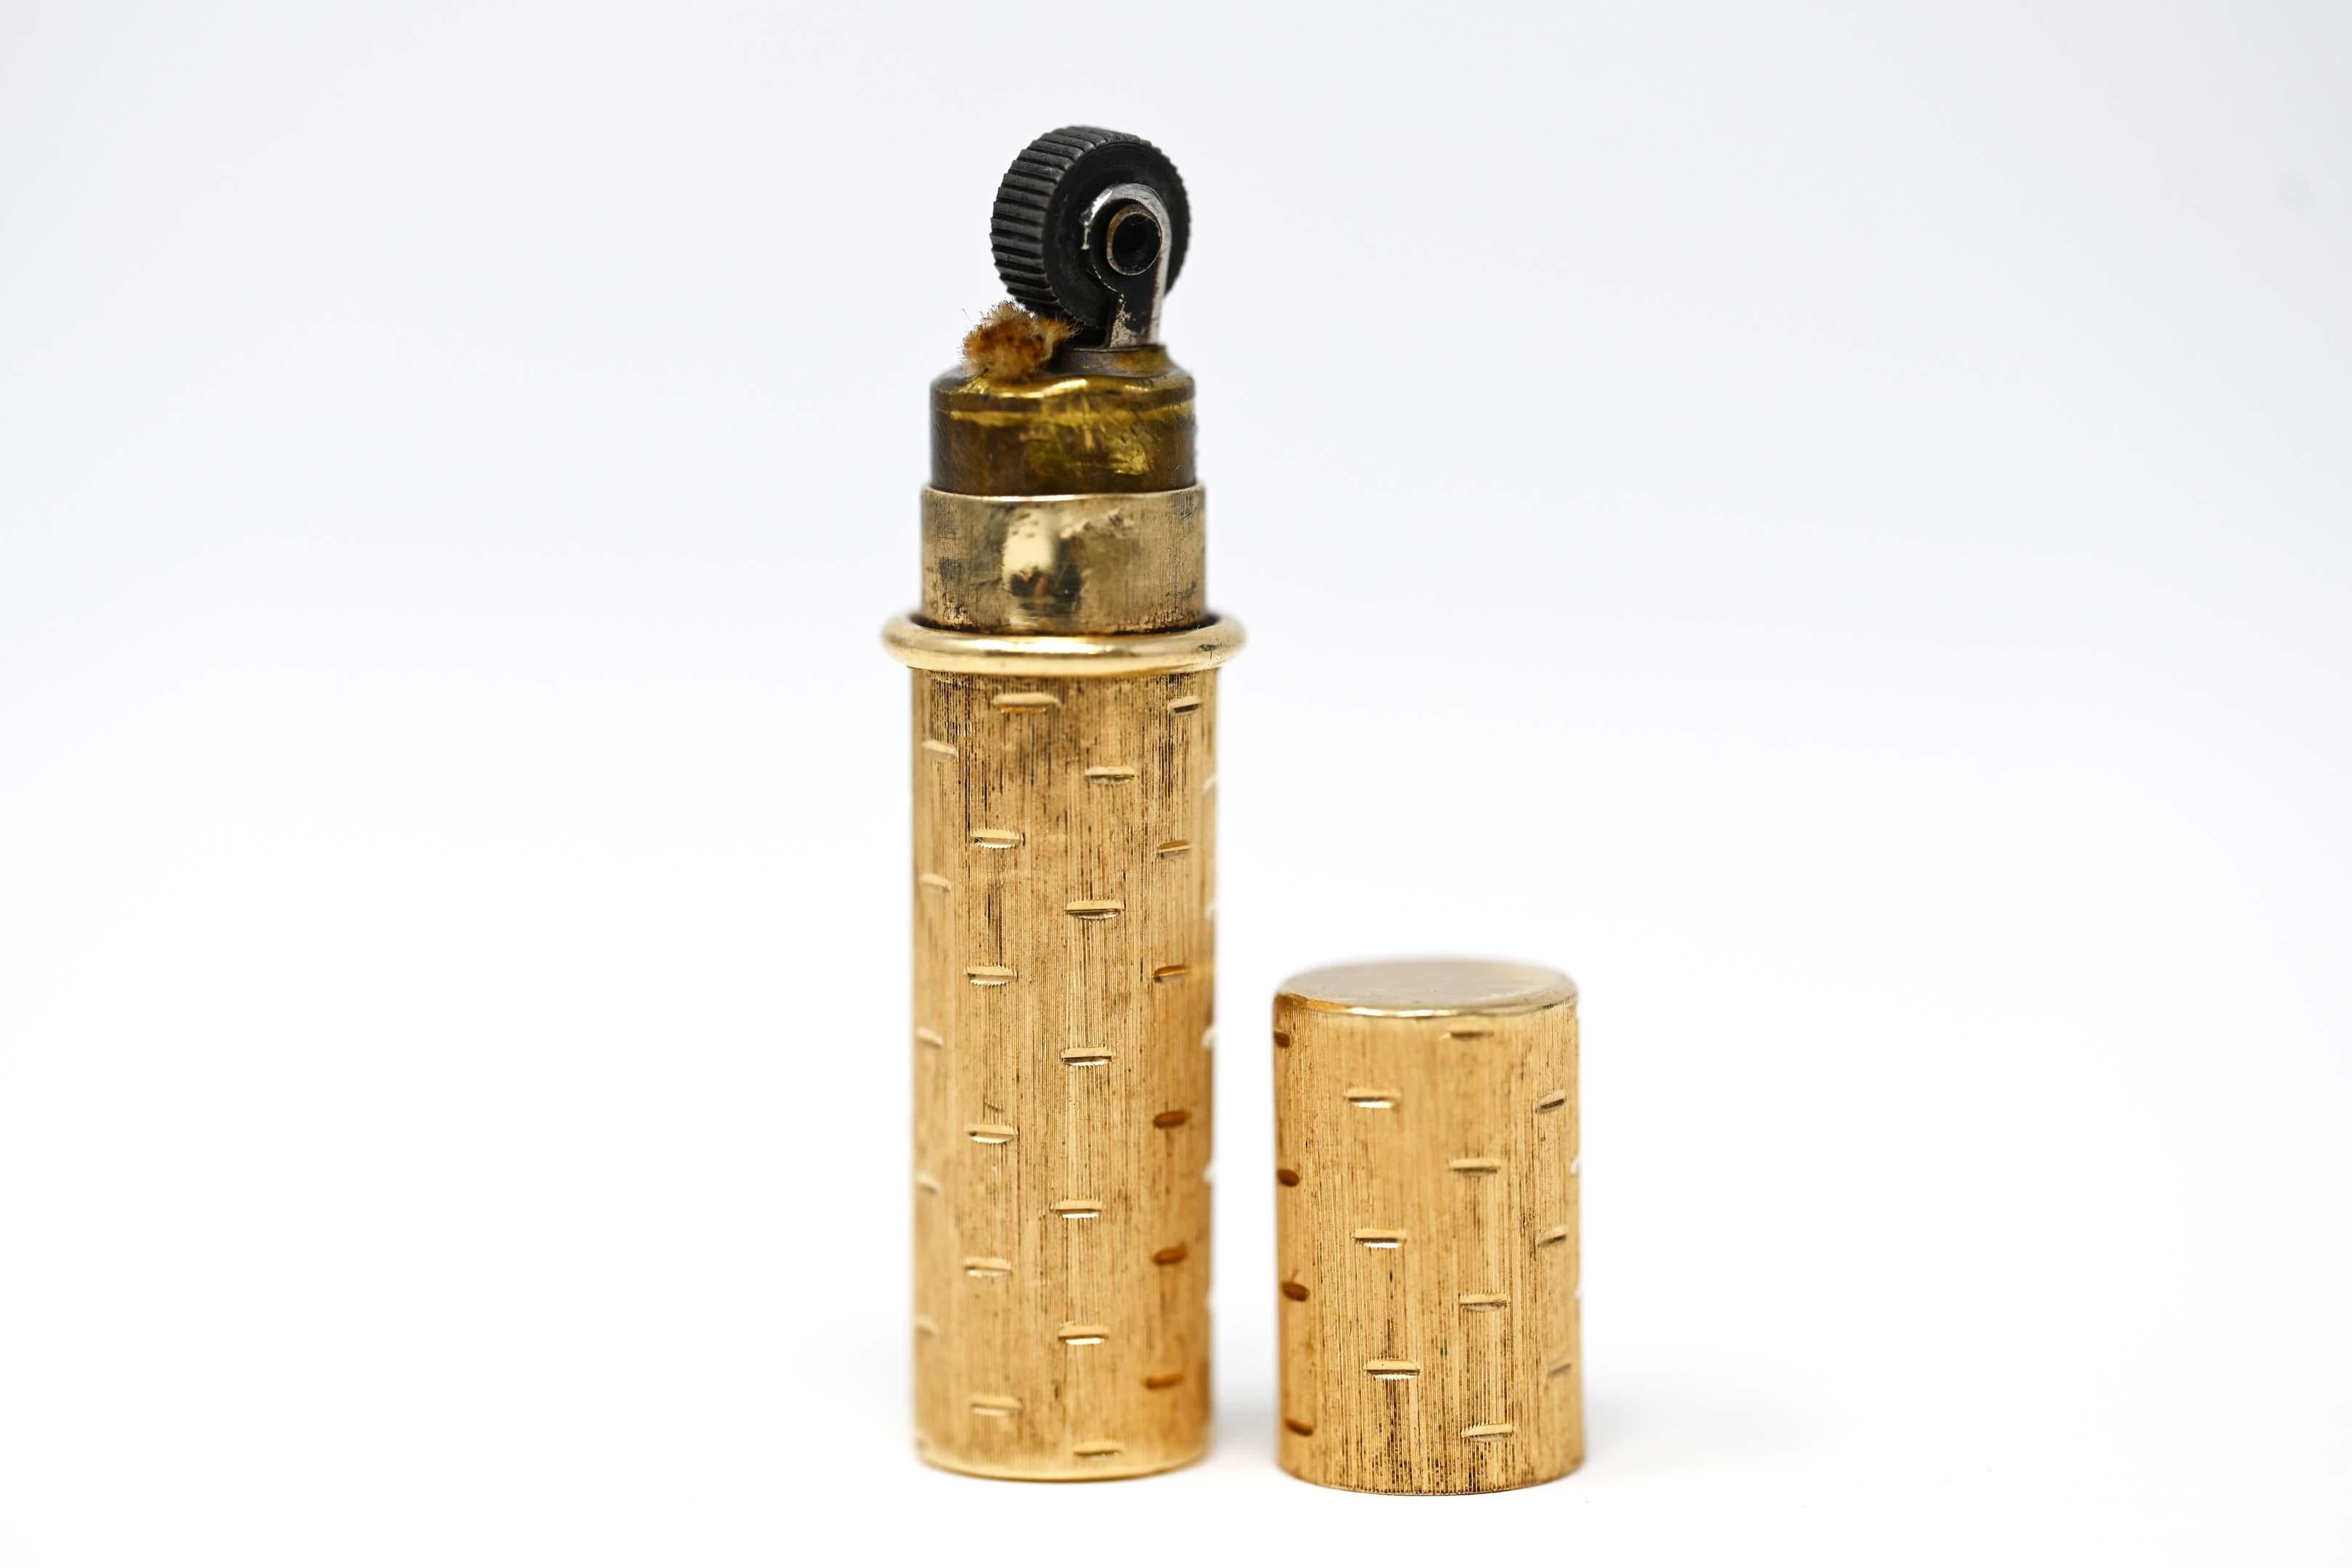 Antikes gebrauchtes Feuerzeug aus 14k Gelbgold, guter Zustand (Brennstoff fehlt), nicht eindeutig gekennzeichnet. Säuregetestet 14k. Maße: 50 mm x 11 mm im Durchmesser. In gutem Zustand.